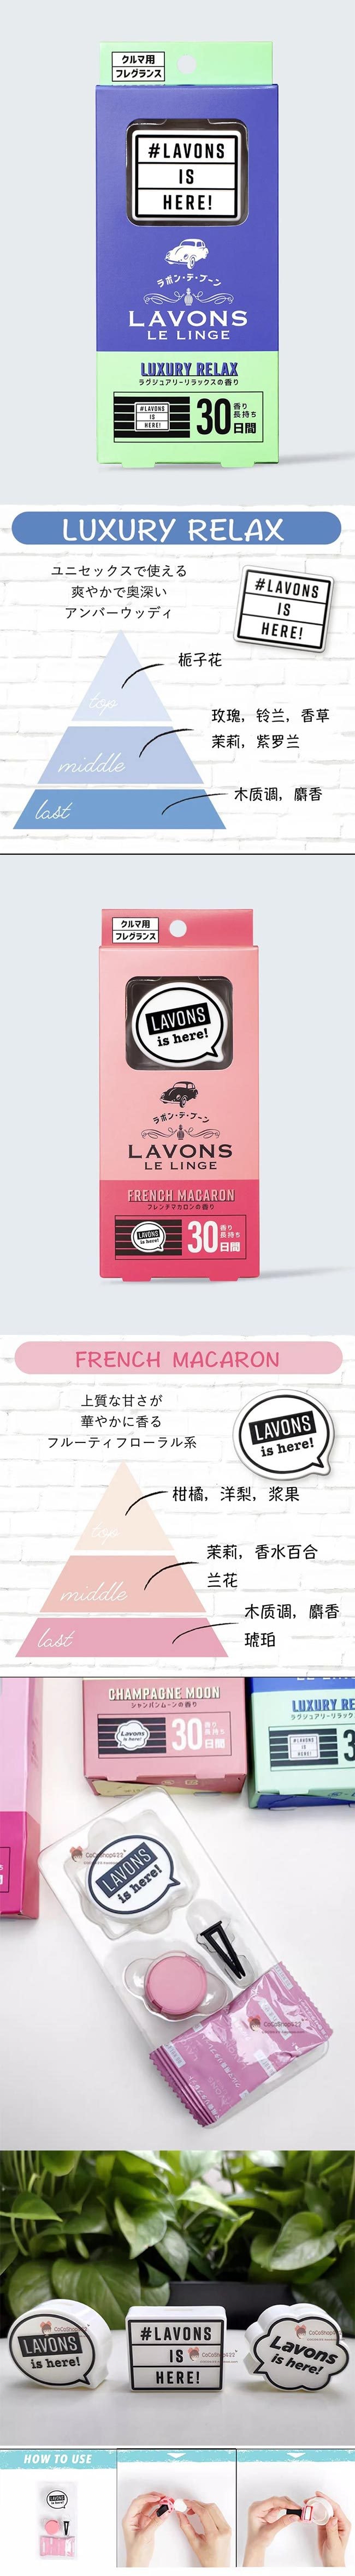 【日本直邮】LAVONS 汽车香氛车载香薰出风口空气清新剂 法国马卡龙 1枚